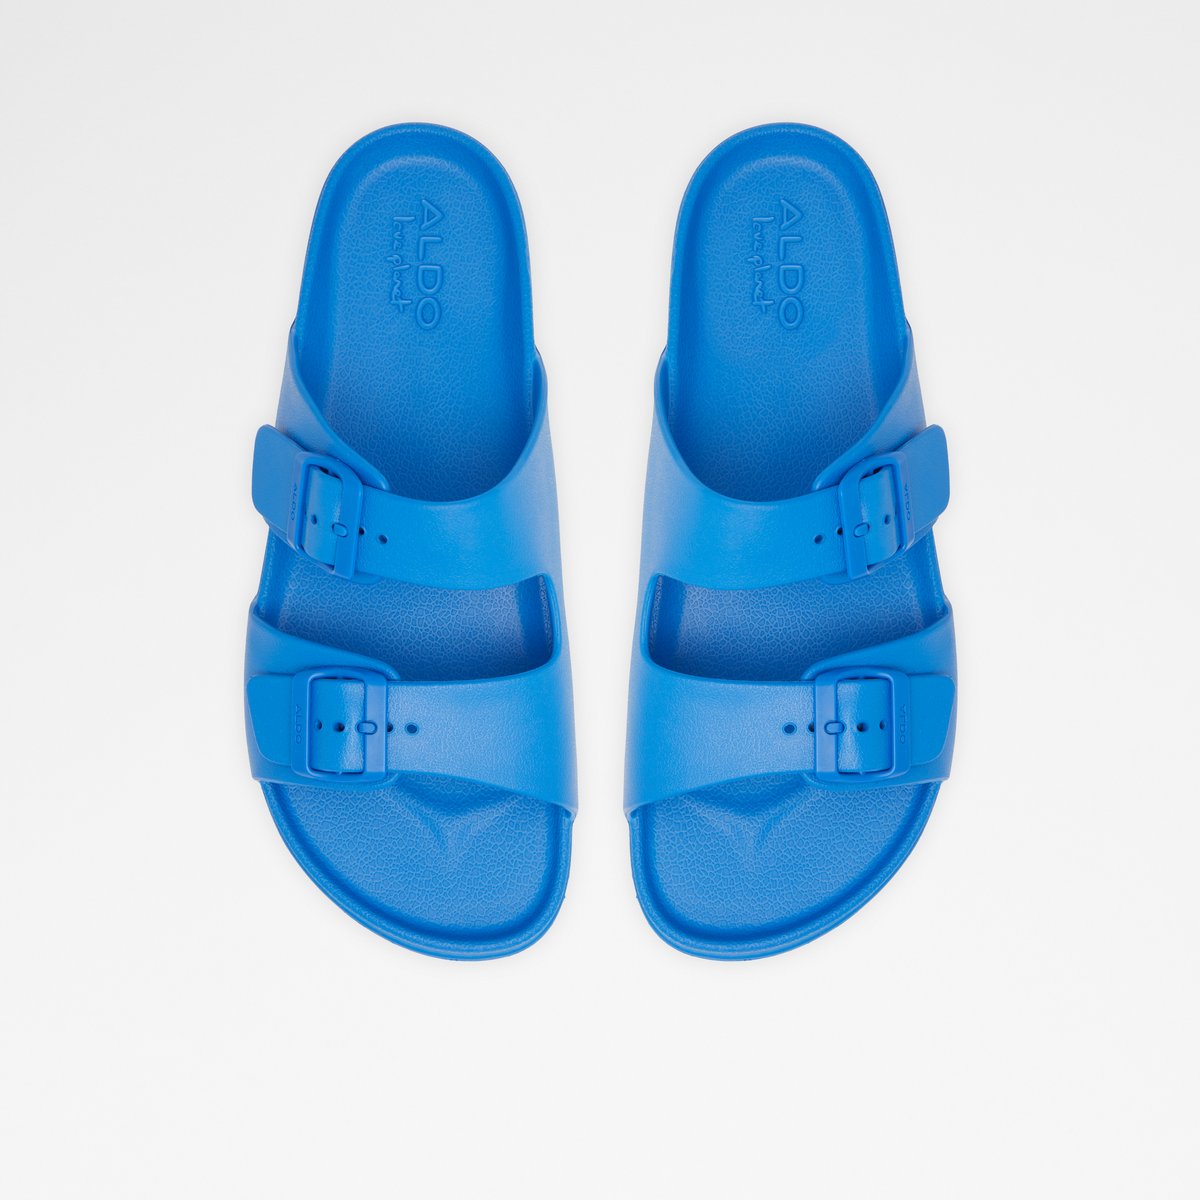 Hideo Men Shoes - Blue - ALDO KSA